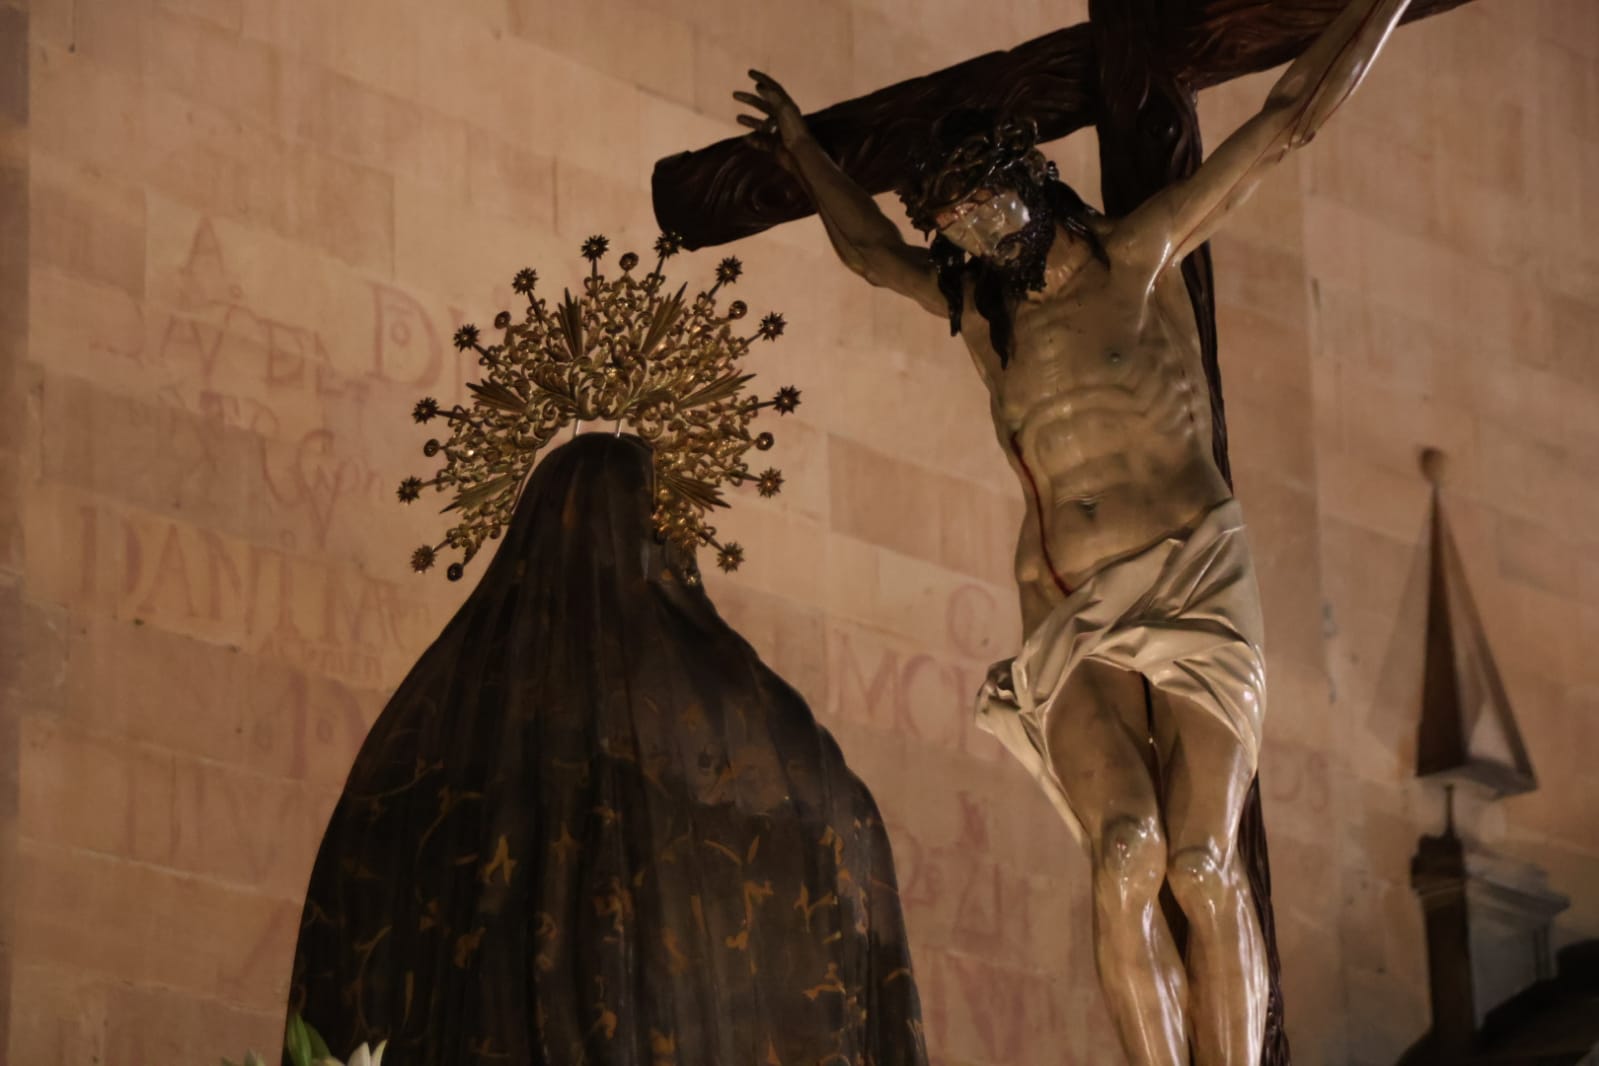 GALERÍA | Procesión Martes Santo de la Hermandad Universitaria del Santísimo Cristo de la Luz y Nuestra Señora de la Sabiduría